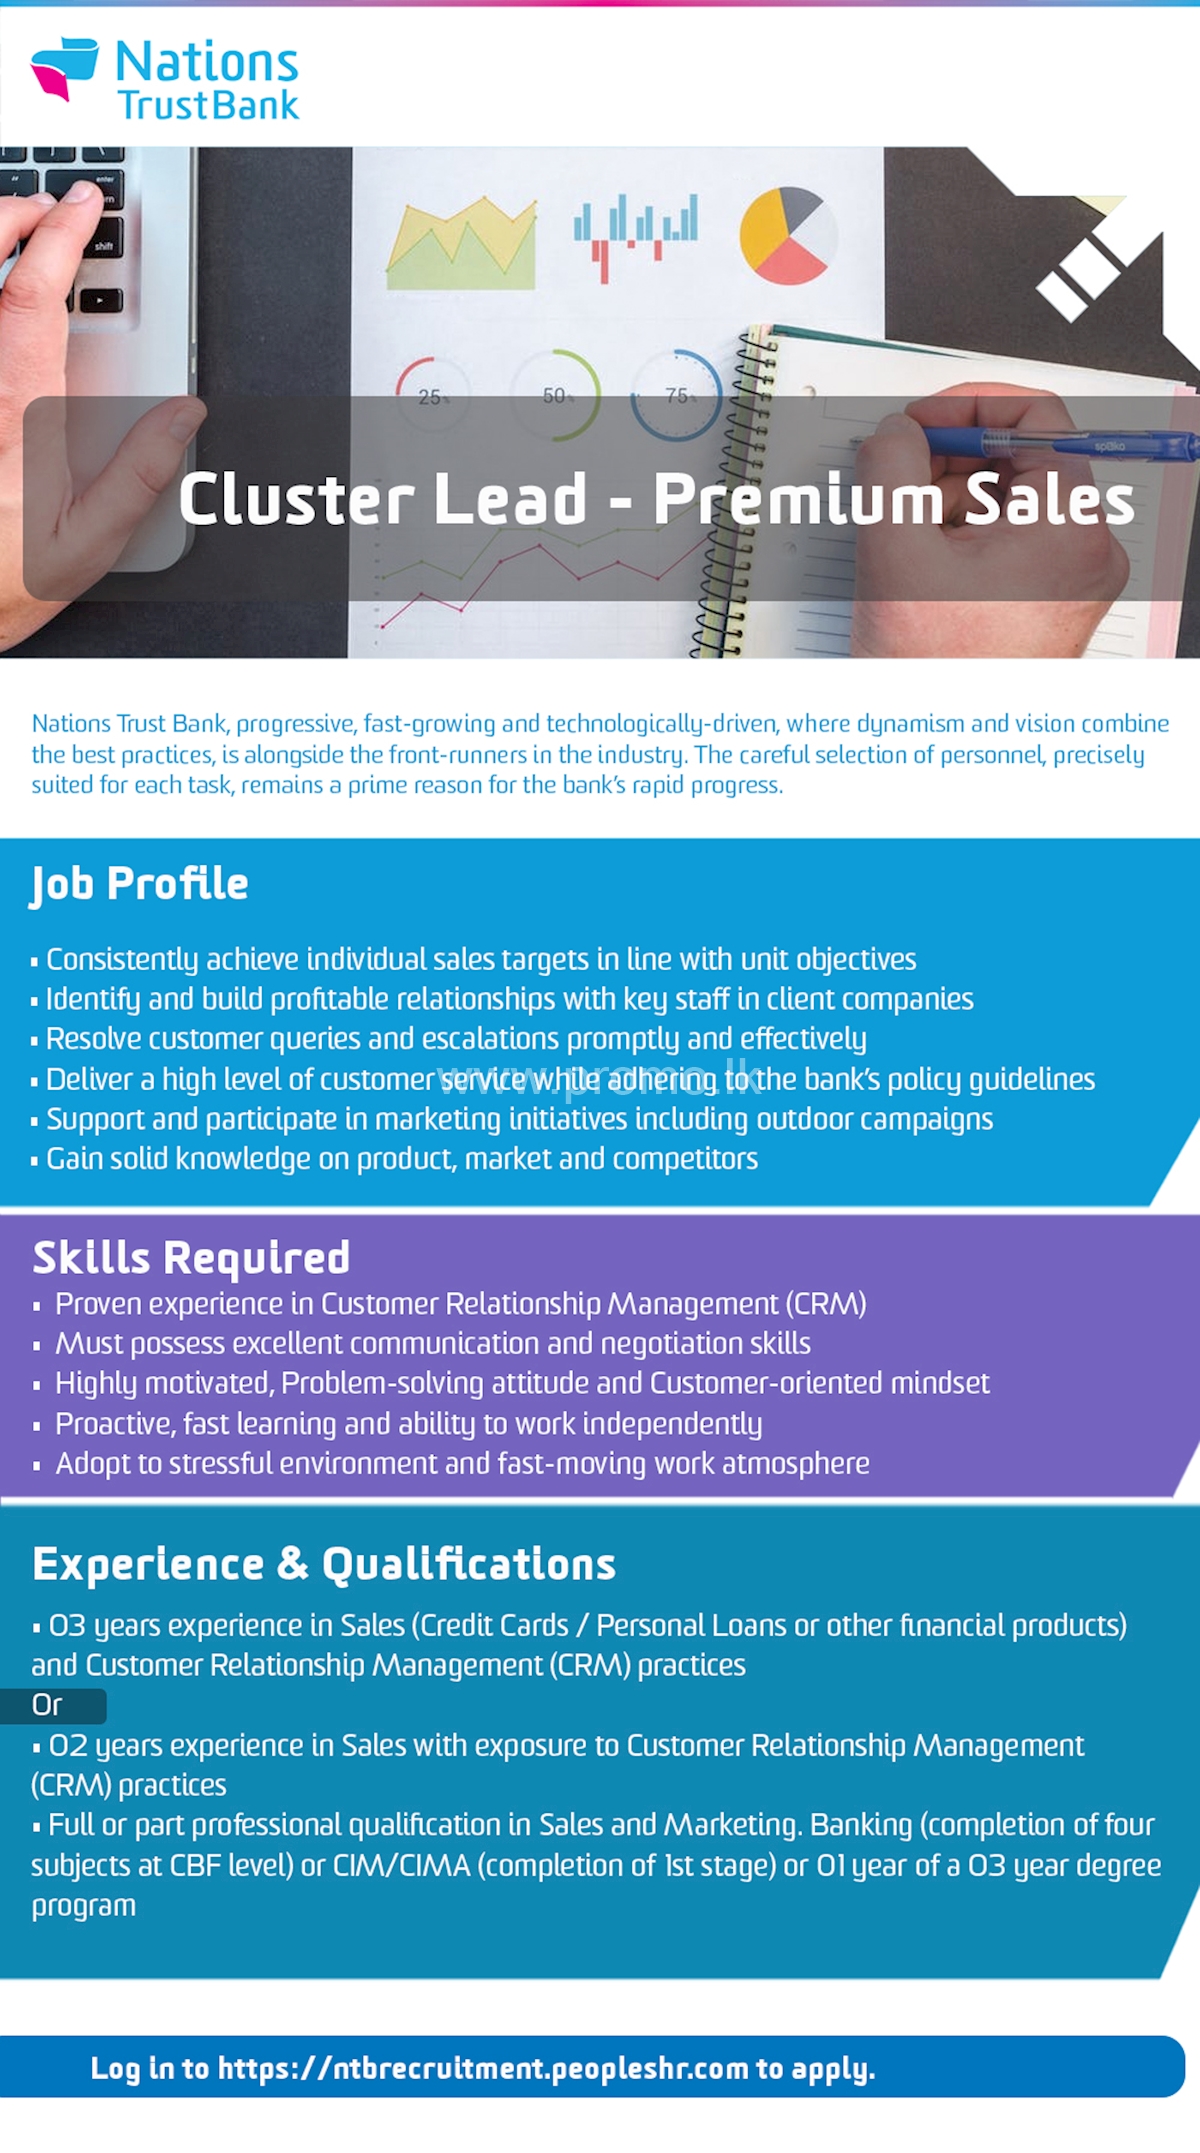 Cluster Lead - Premium Sales